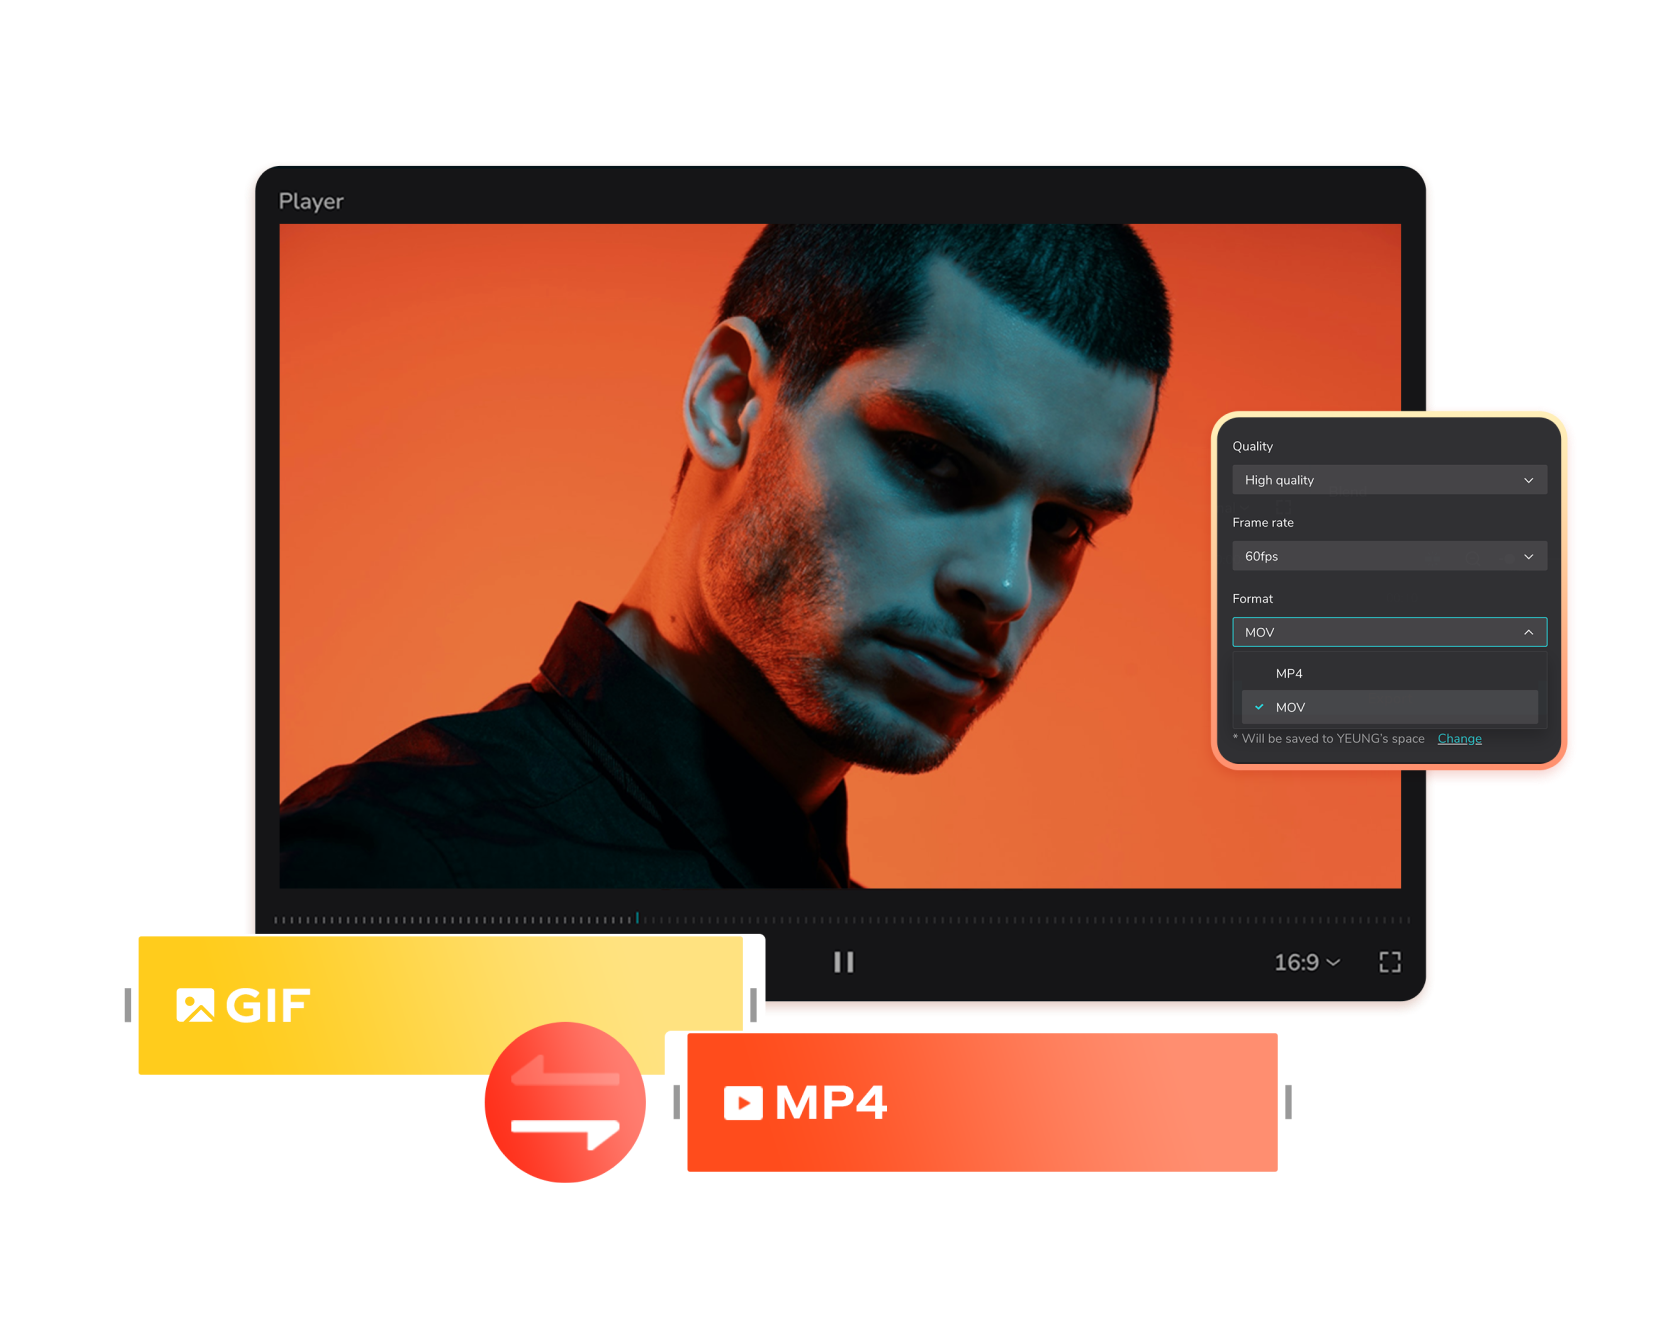 GIF 'i MP4 Ücretsiz Çevrimiçi' e Dönüştürün